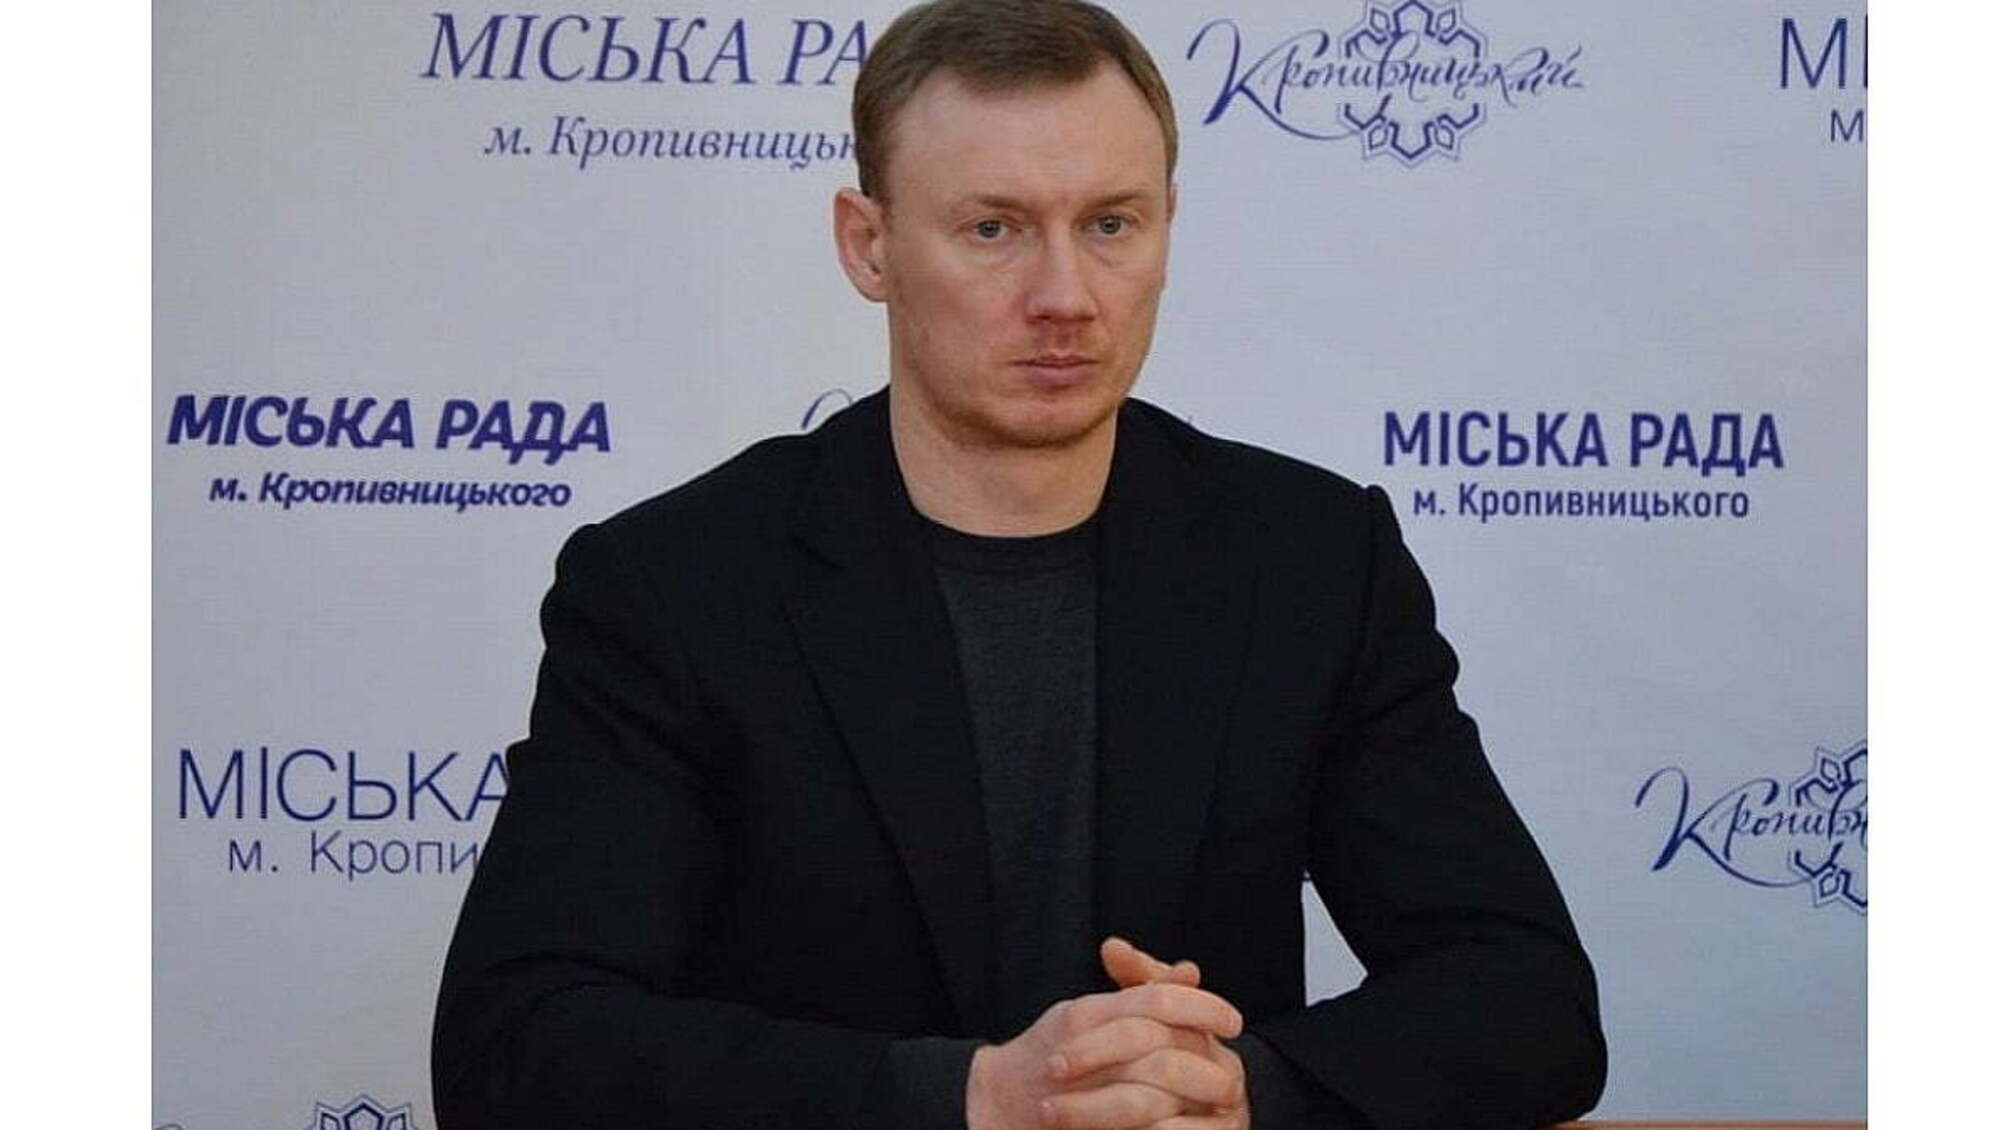 У Кропивницькому чиновнику Табалову вручили громадську підозру через зв'язки з місцевим політиком Дригою